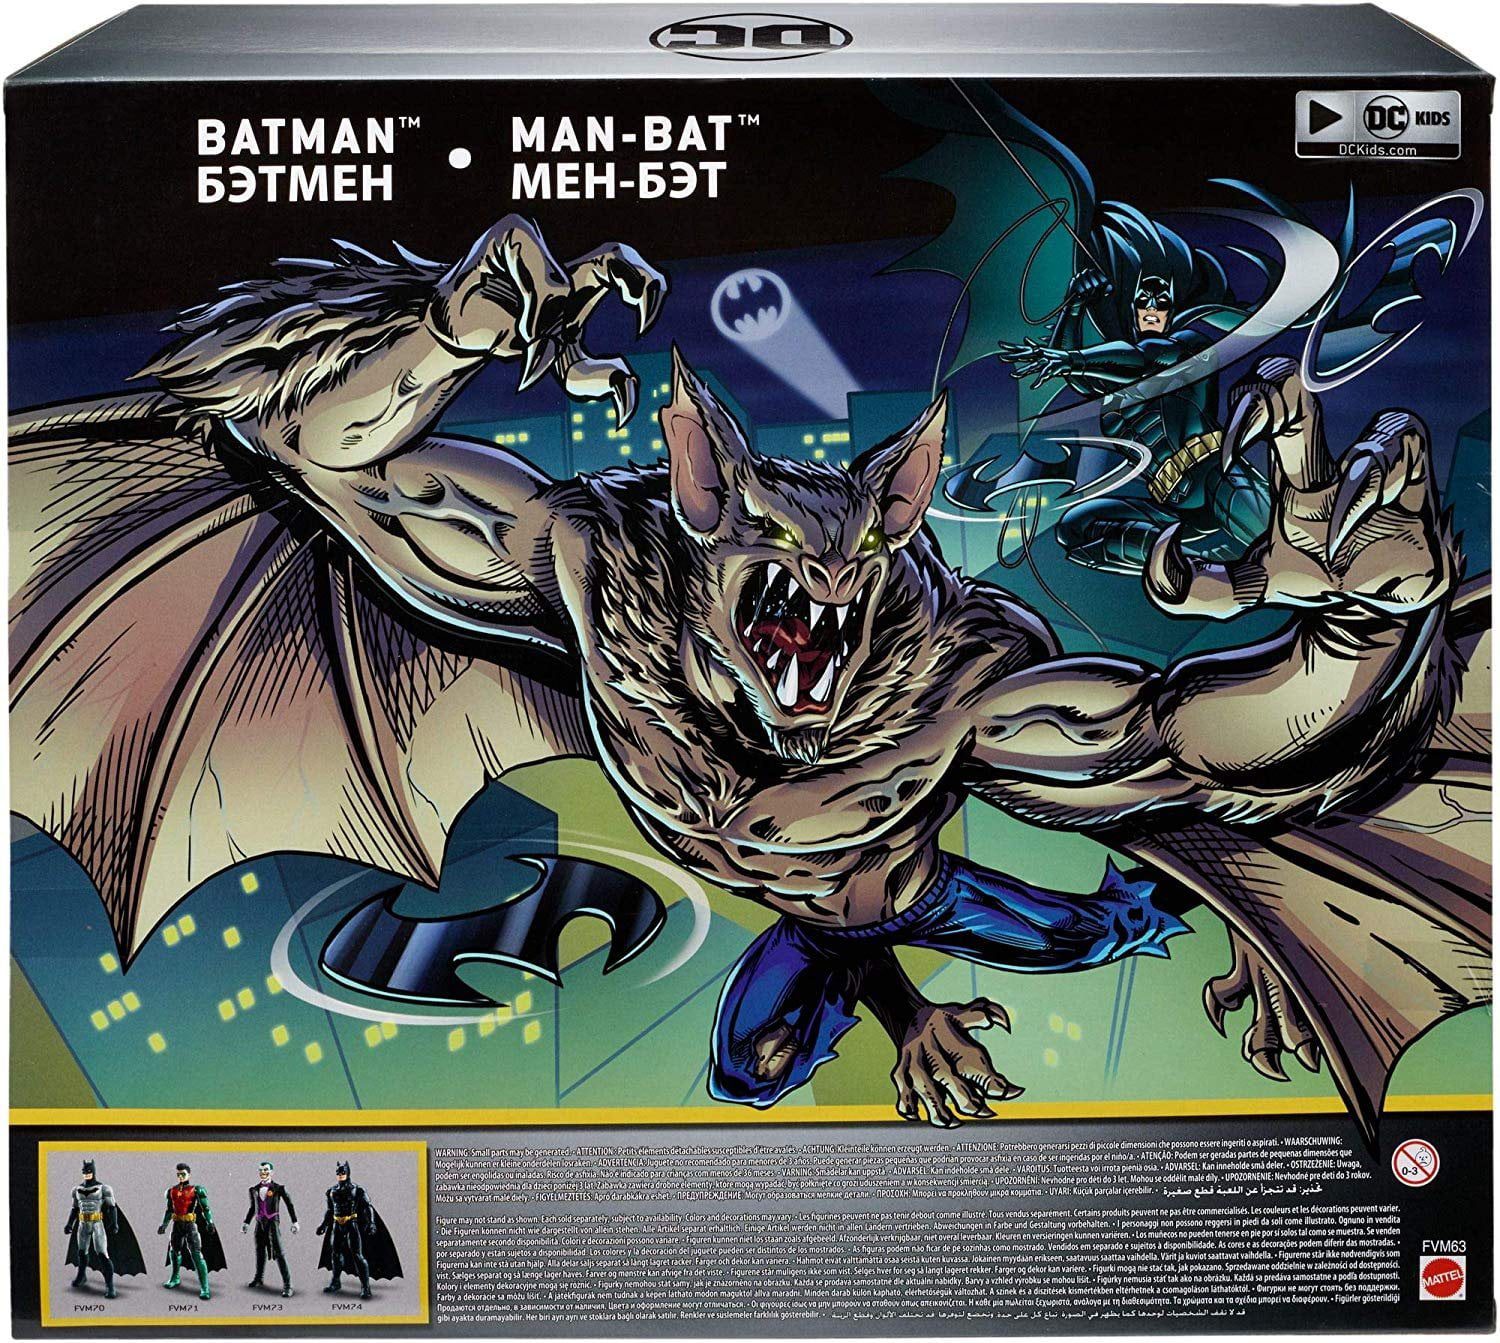 Details about   DC Comics Batman Missions Batman vs Man-Bat Contre Action Figure 